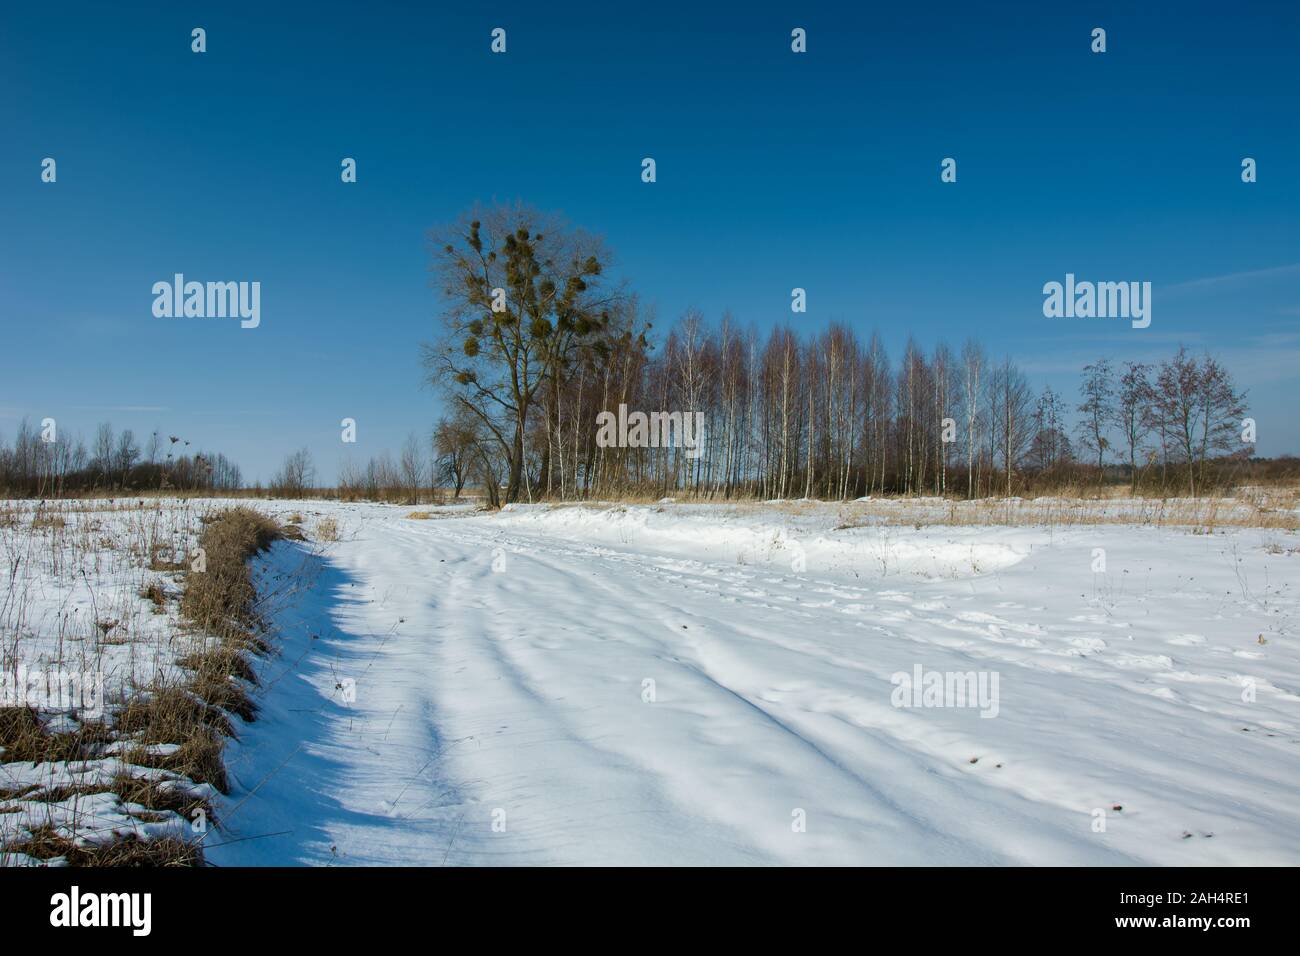 Route rurale couverte de neige, les arbres à l'horizon et ciel bleu Banque D'Images